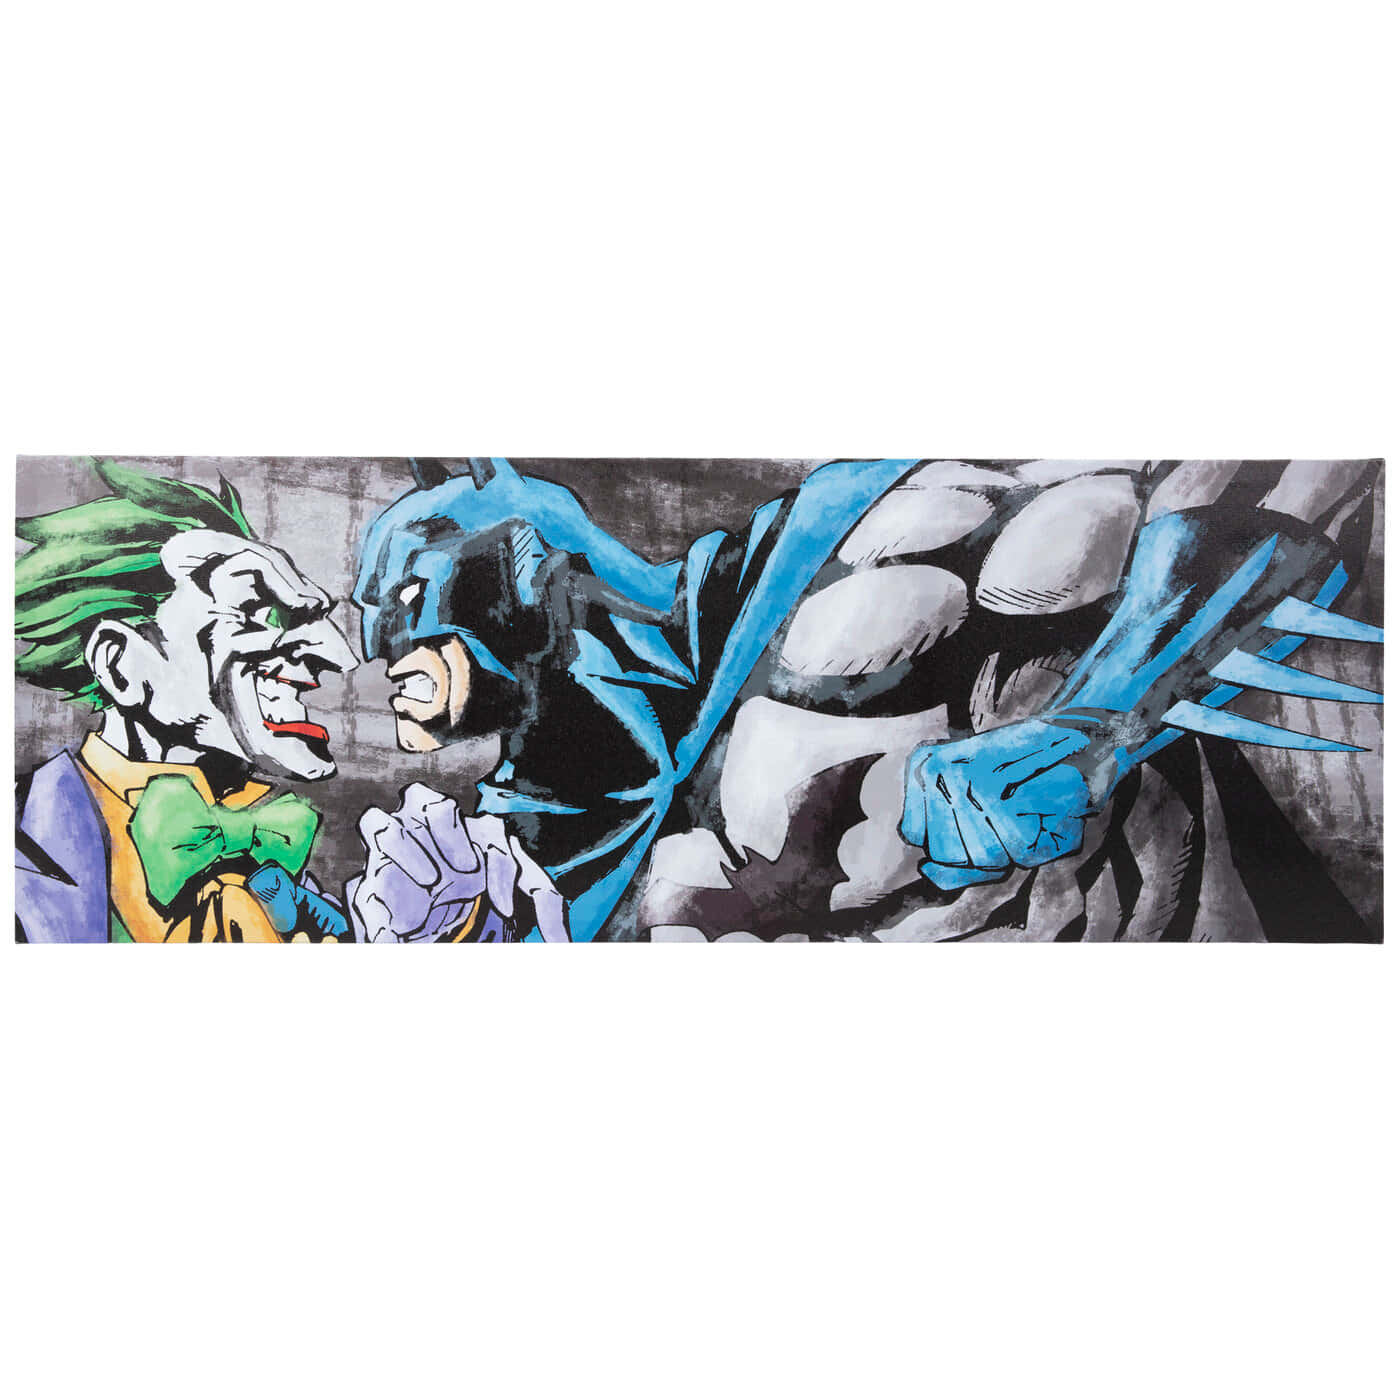 Batman Streets Of Gotham 1400 X 1400 Wallpaper Wallpaper